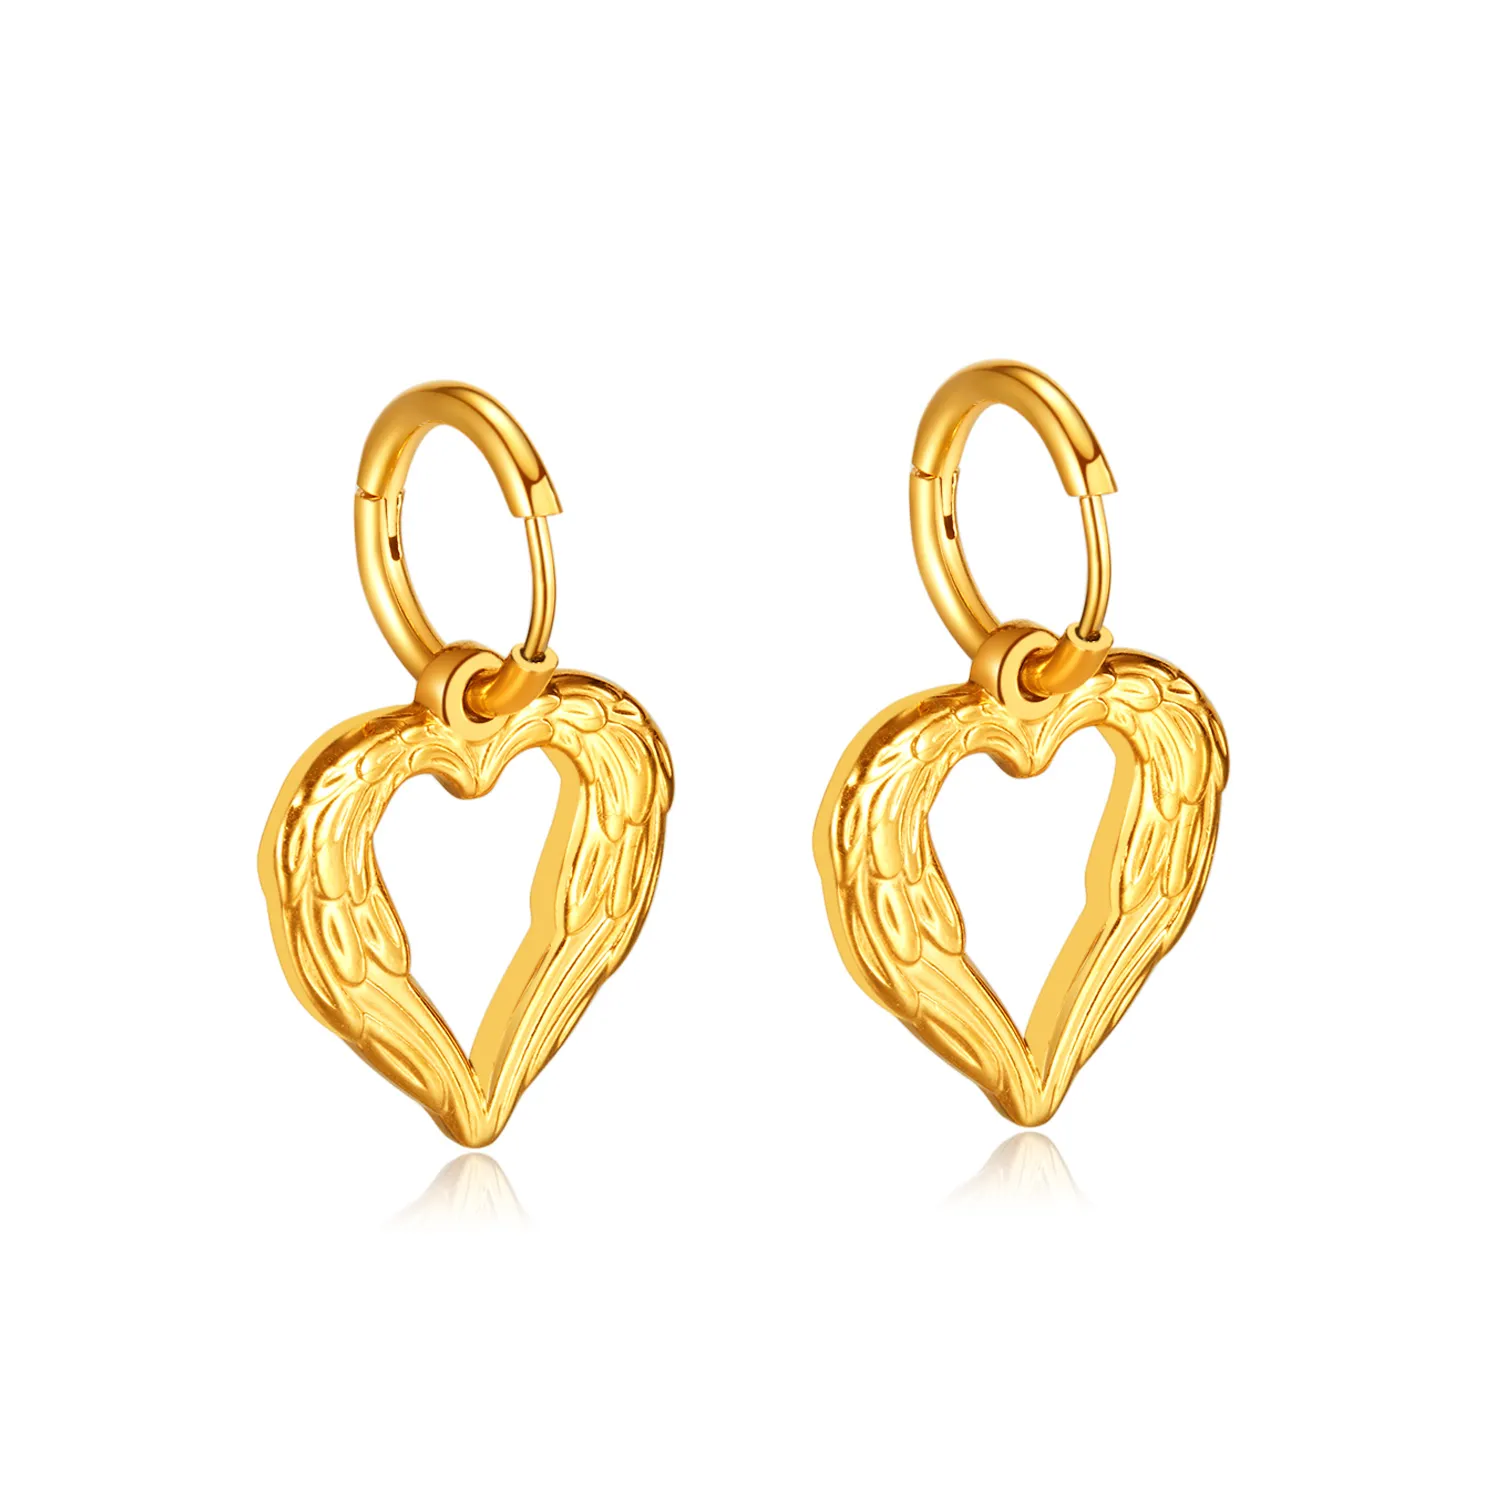 Fashion Simple Hollow Love Heart Earrings Angel Wings Stainless Steel Stud Earrings for Women 860